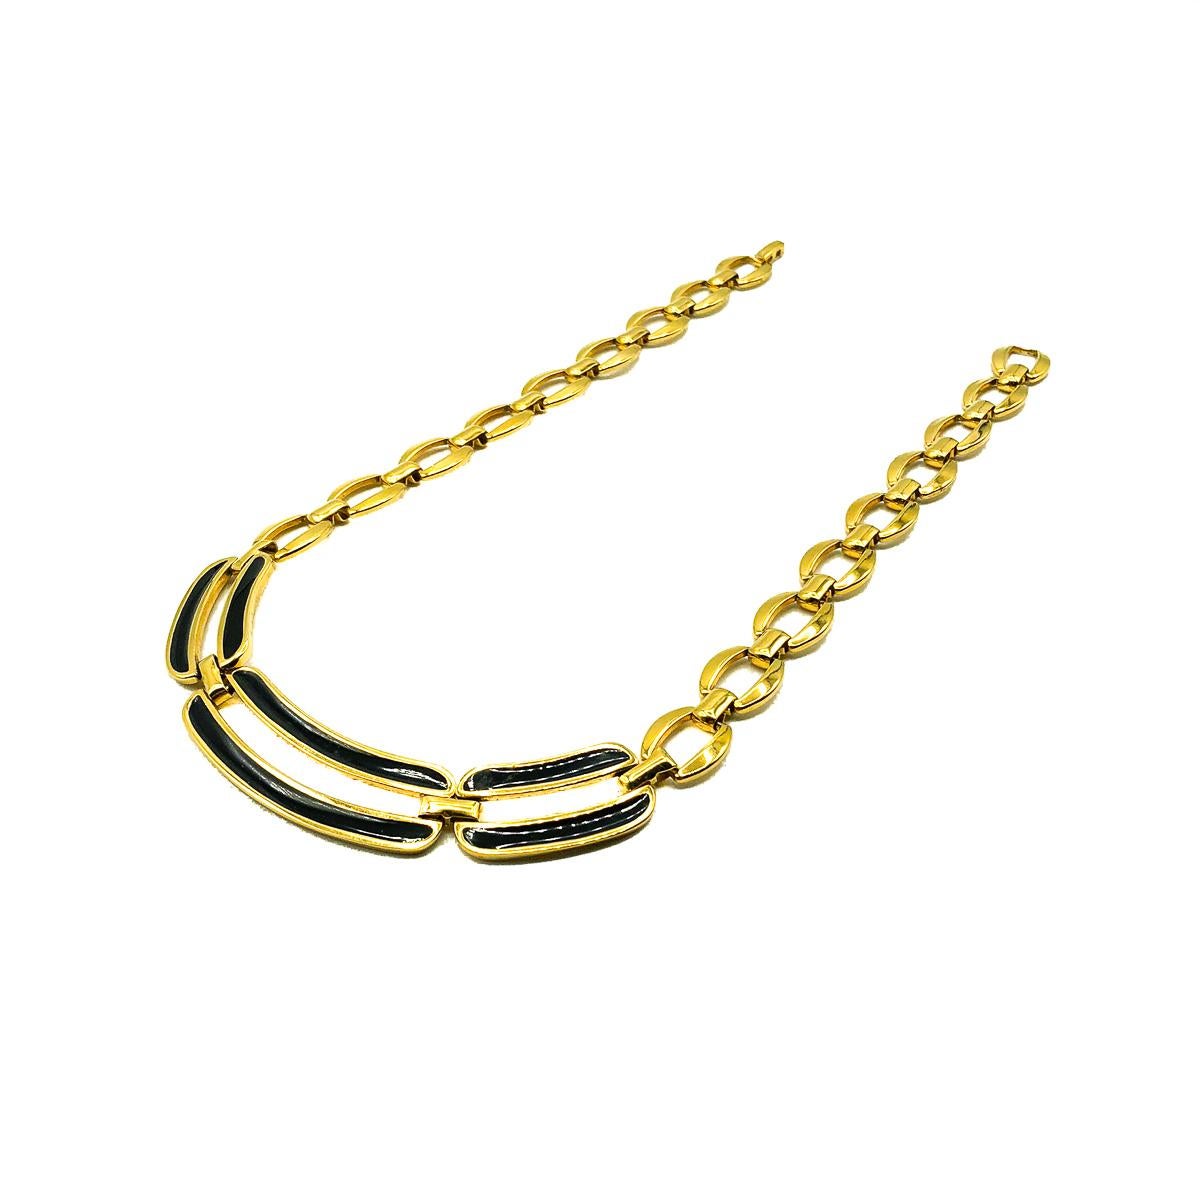 Eine klassische Napier-Bar-Halskette im Vintage-Stil. Gefertigt aus vergoldetem Metall mit schwarzer Emaille. In sehr gutem altem Zustand, ca. 43 cm. Unterschrieben. Ein ewiger Leistungsträger in Sachen Juwelen. 

Die 2016 gegründete britische Marke